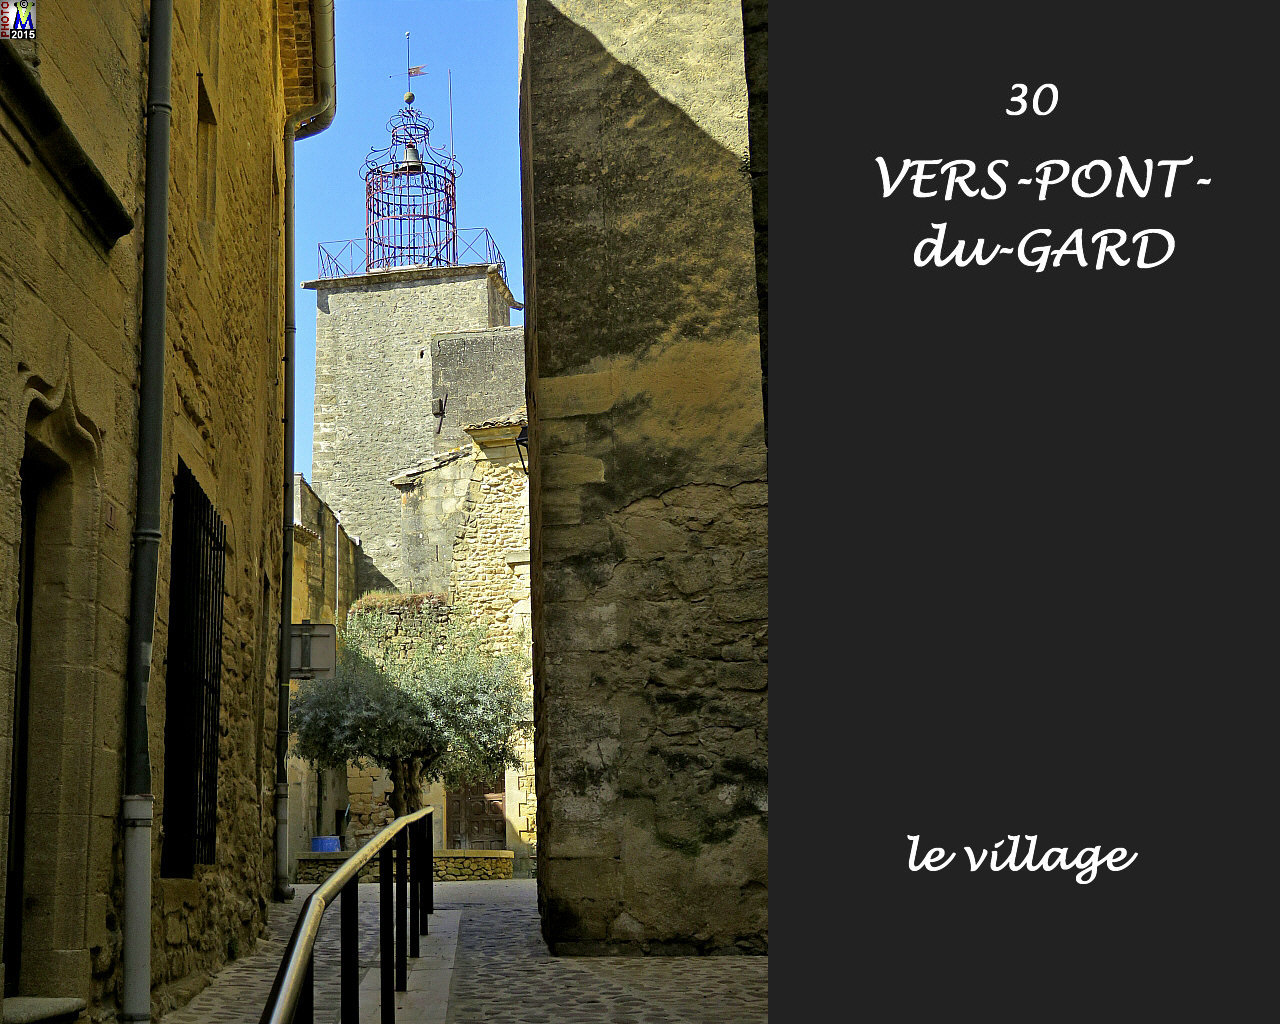 30VERS-PONT-du-GARD_village_118.jpg